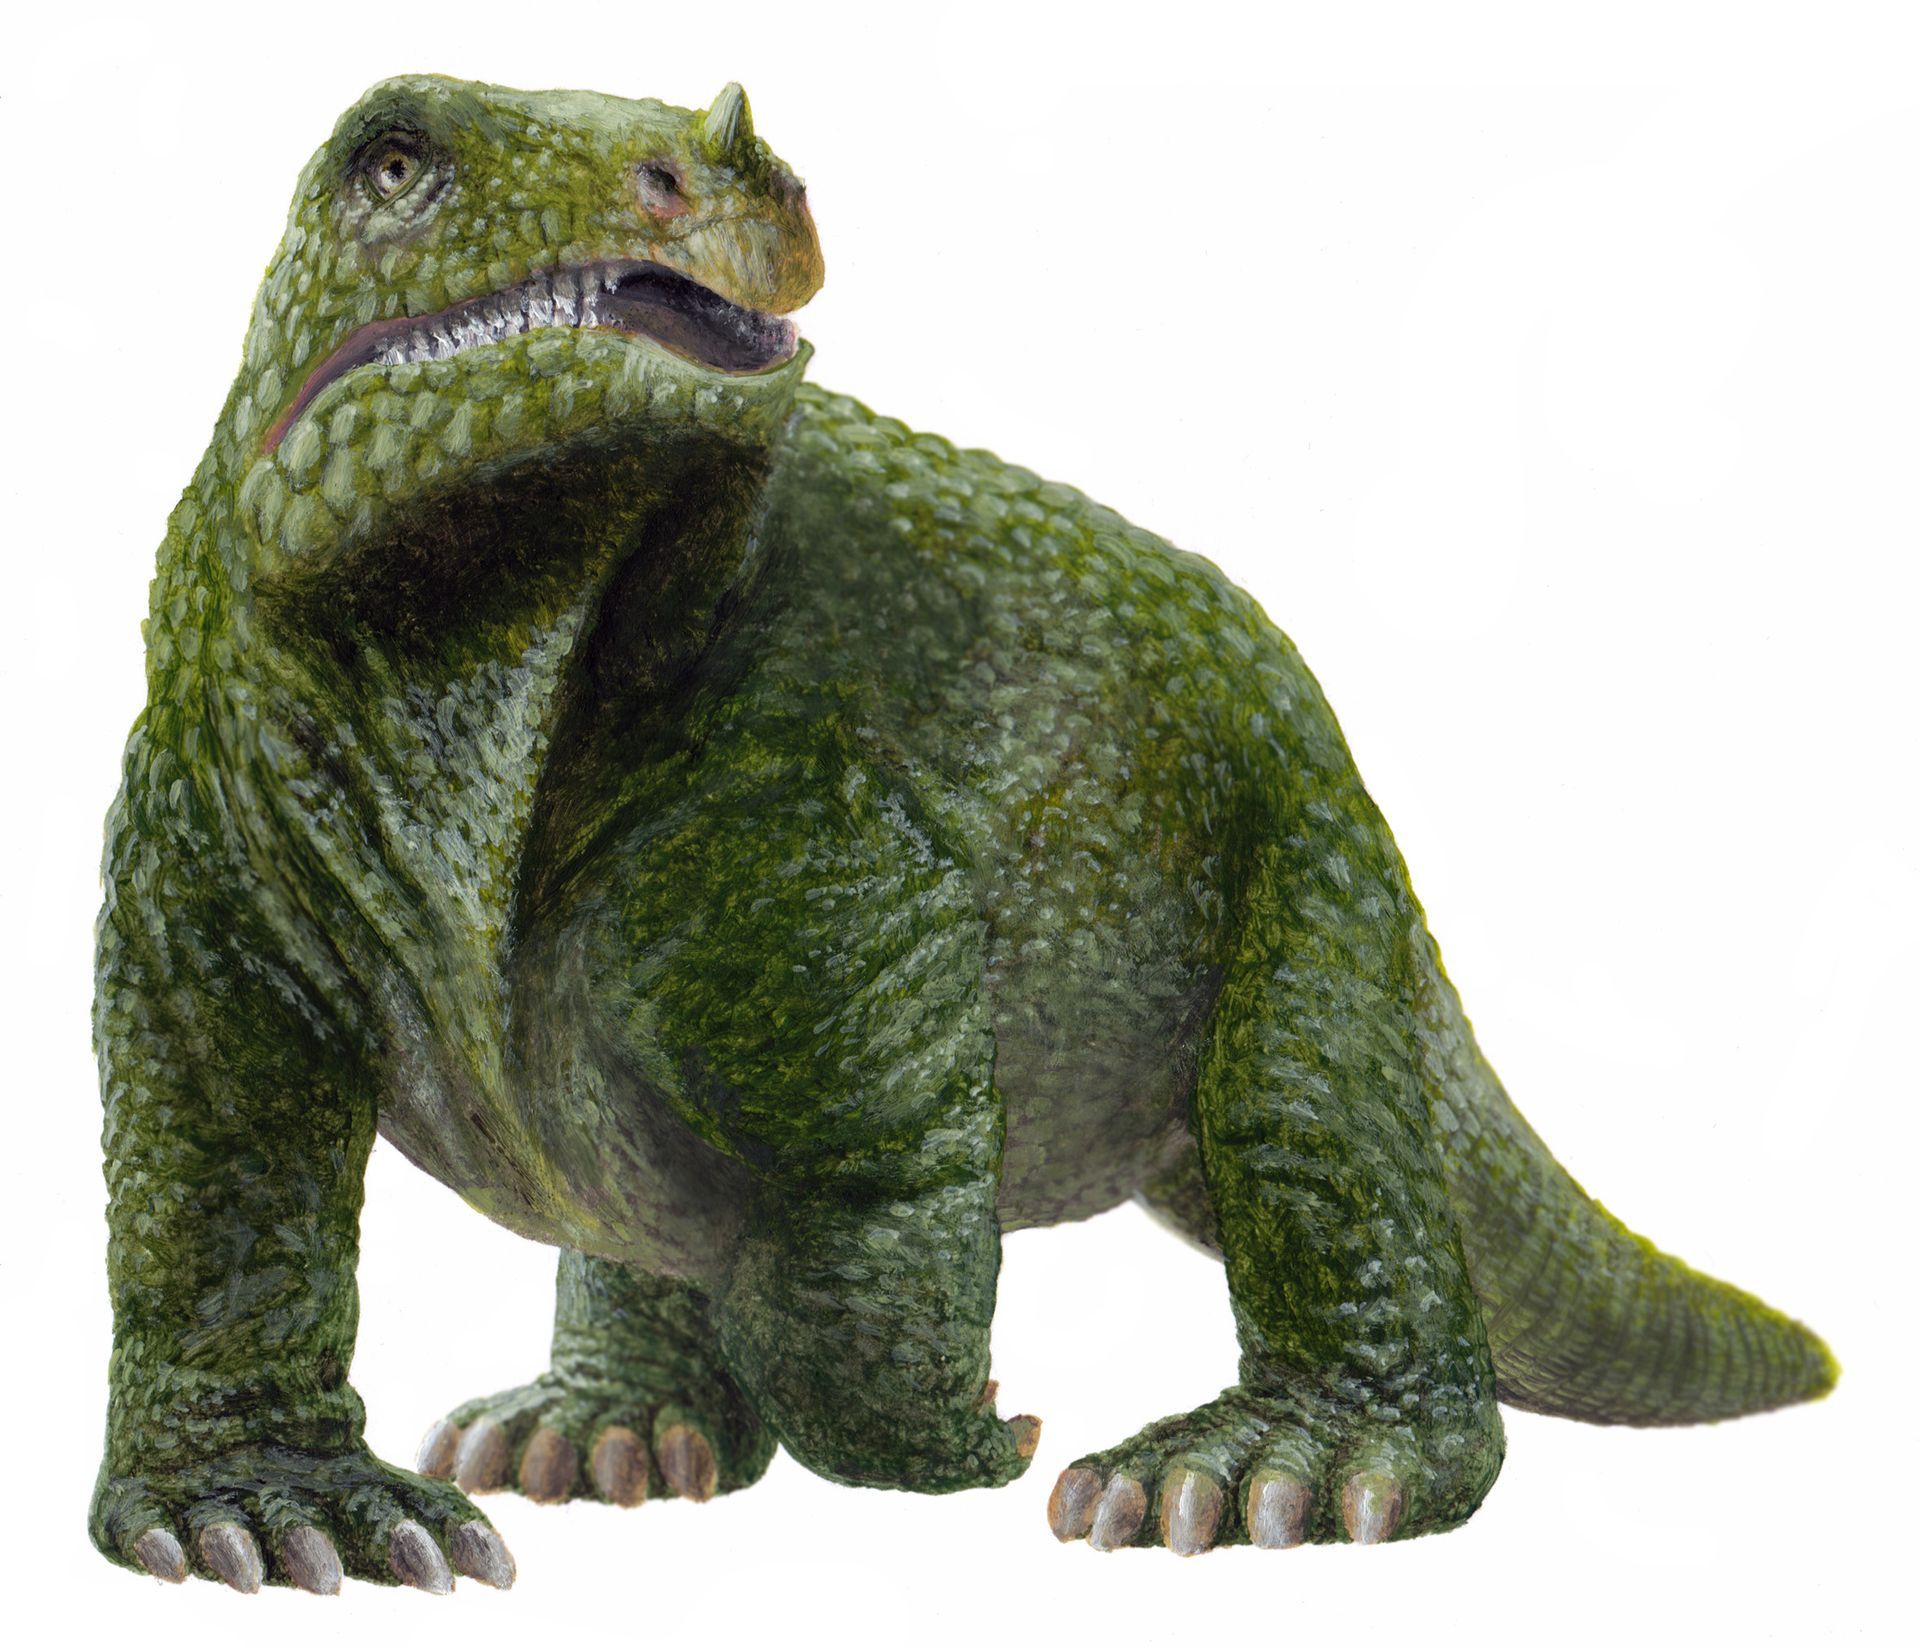 Iguanodon als dickhäutiges Reptil